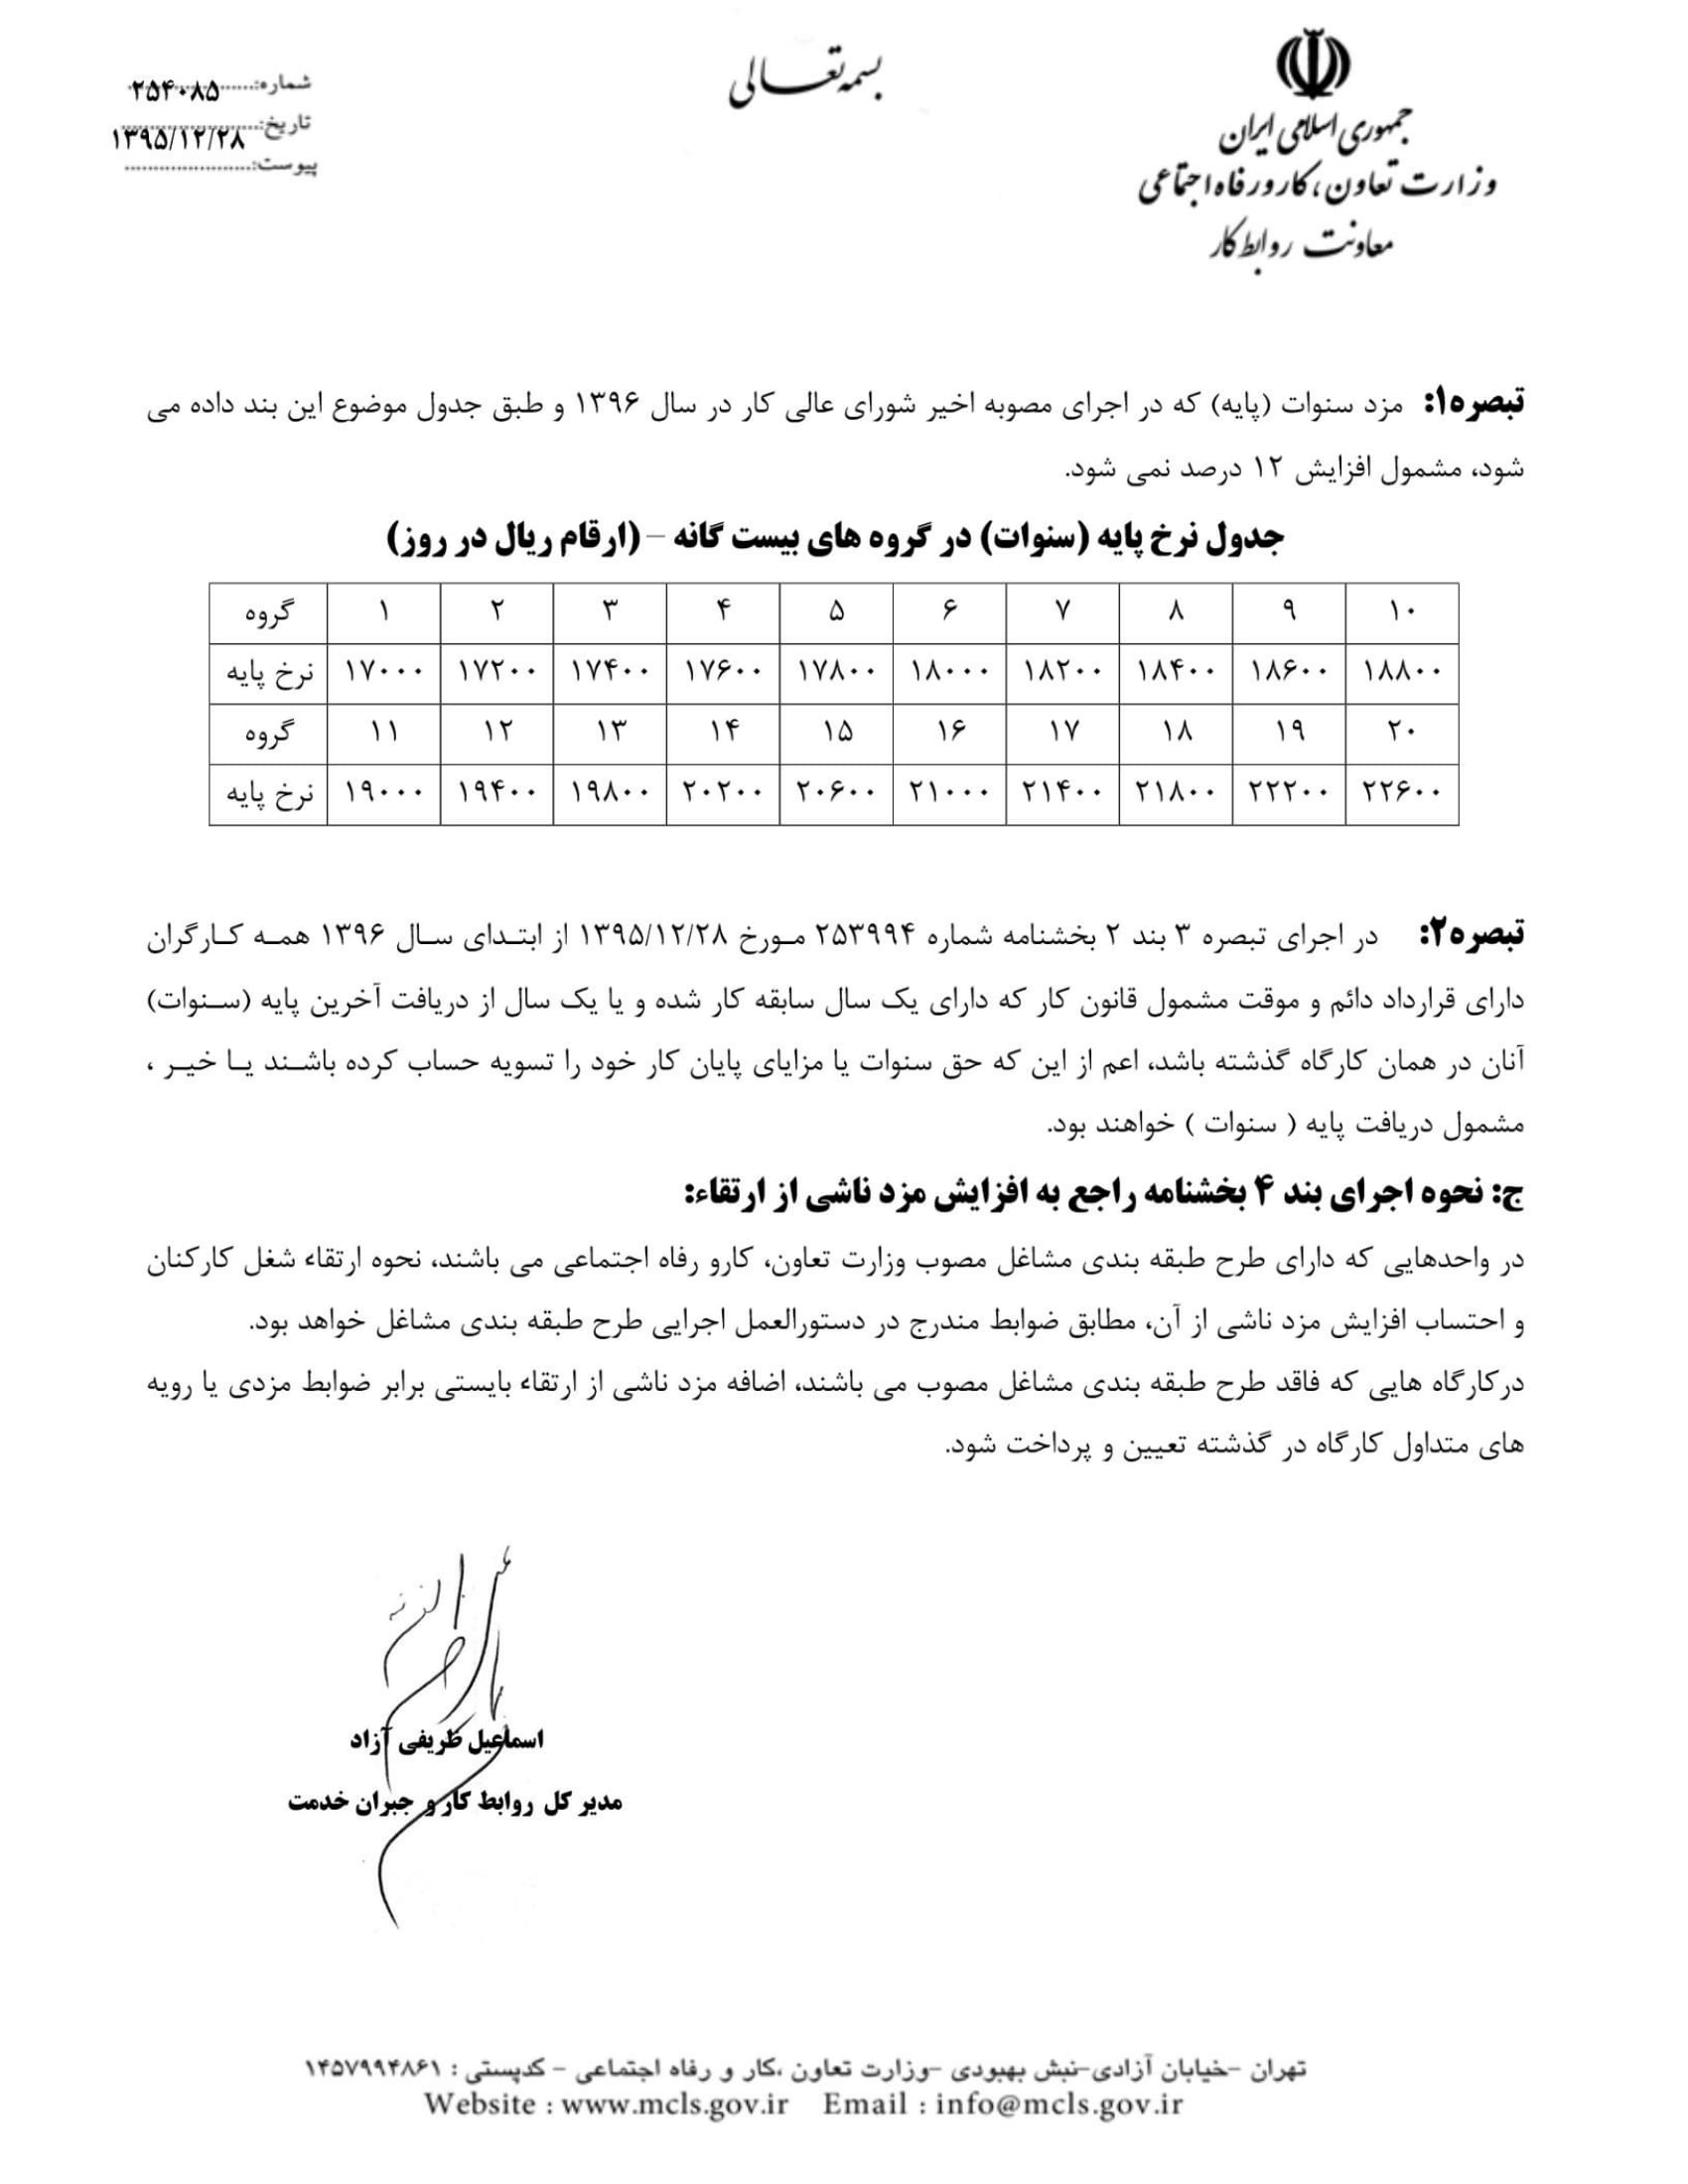 بخشنامه مقام عالی وزارت در خصوص دریافت اخبار و اطلاعات -4